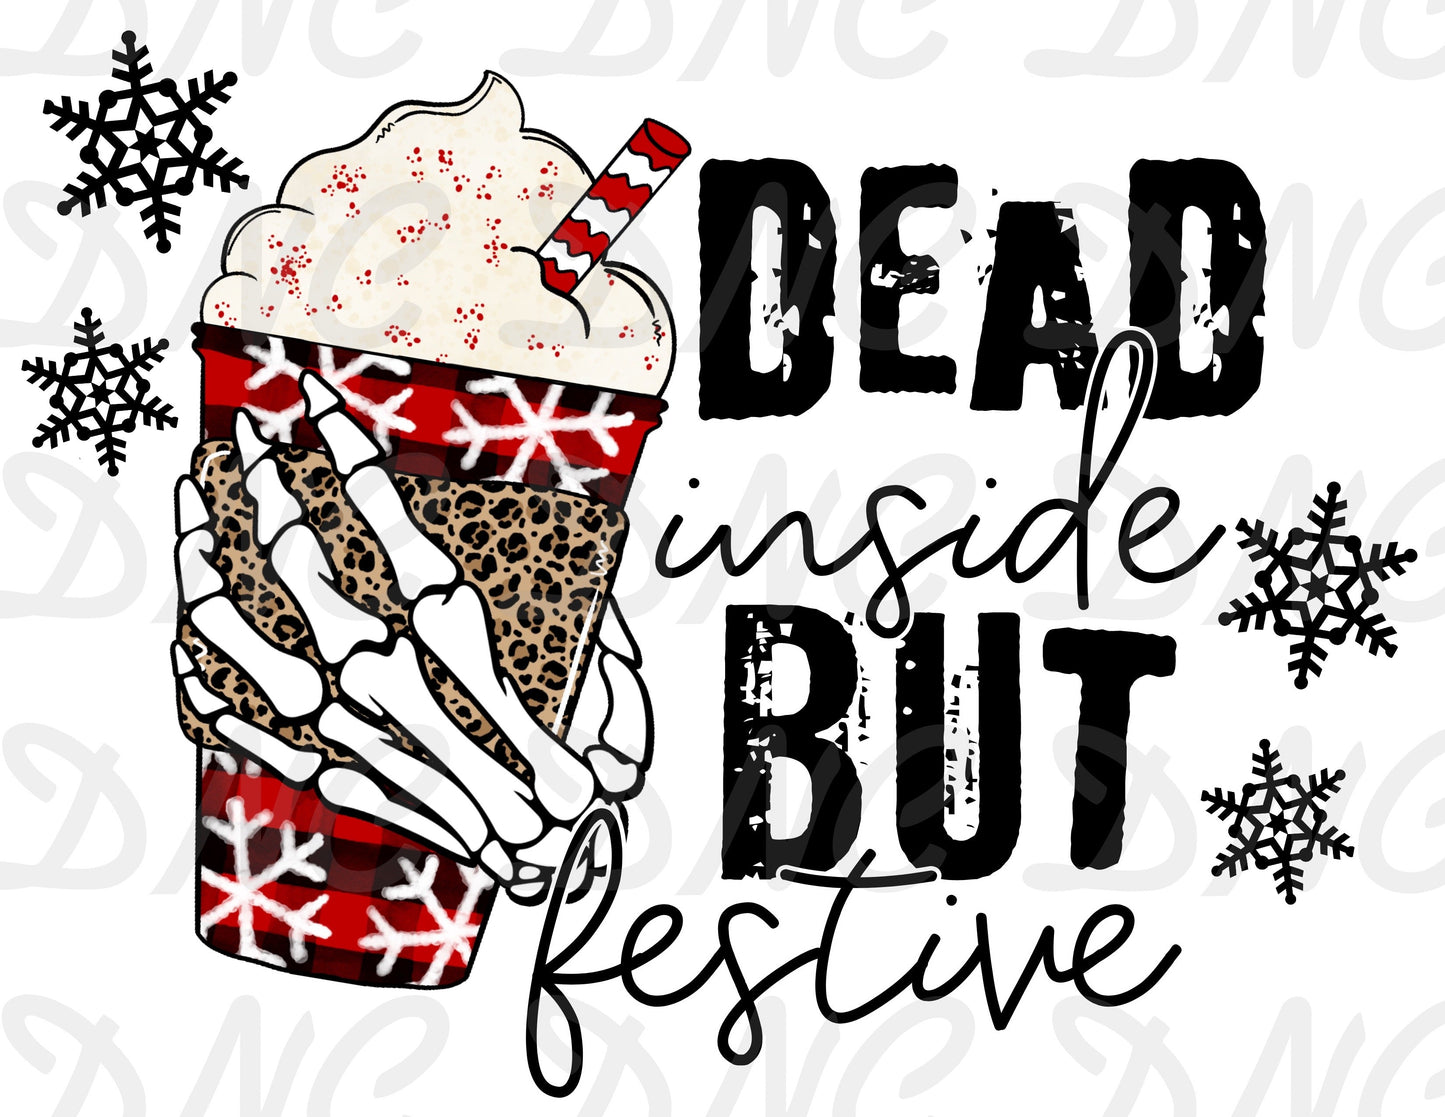 Dead inside but festive  - Sublimation